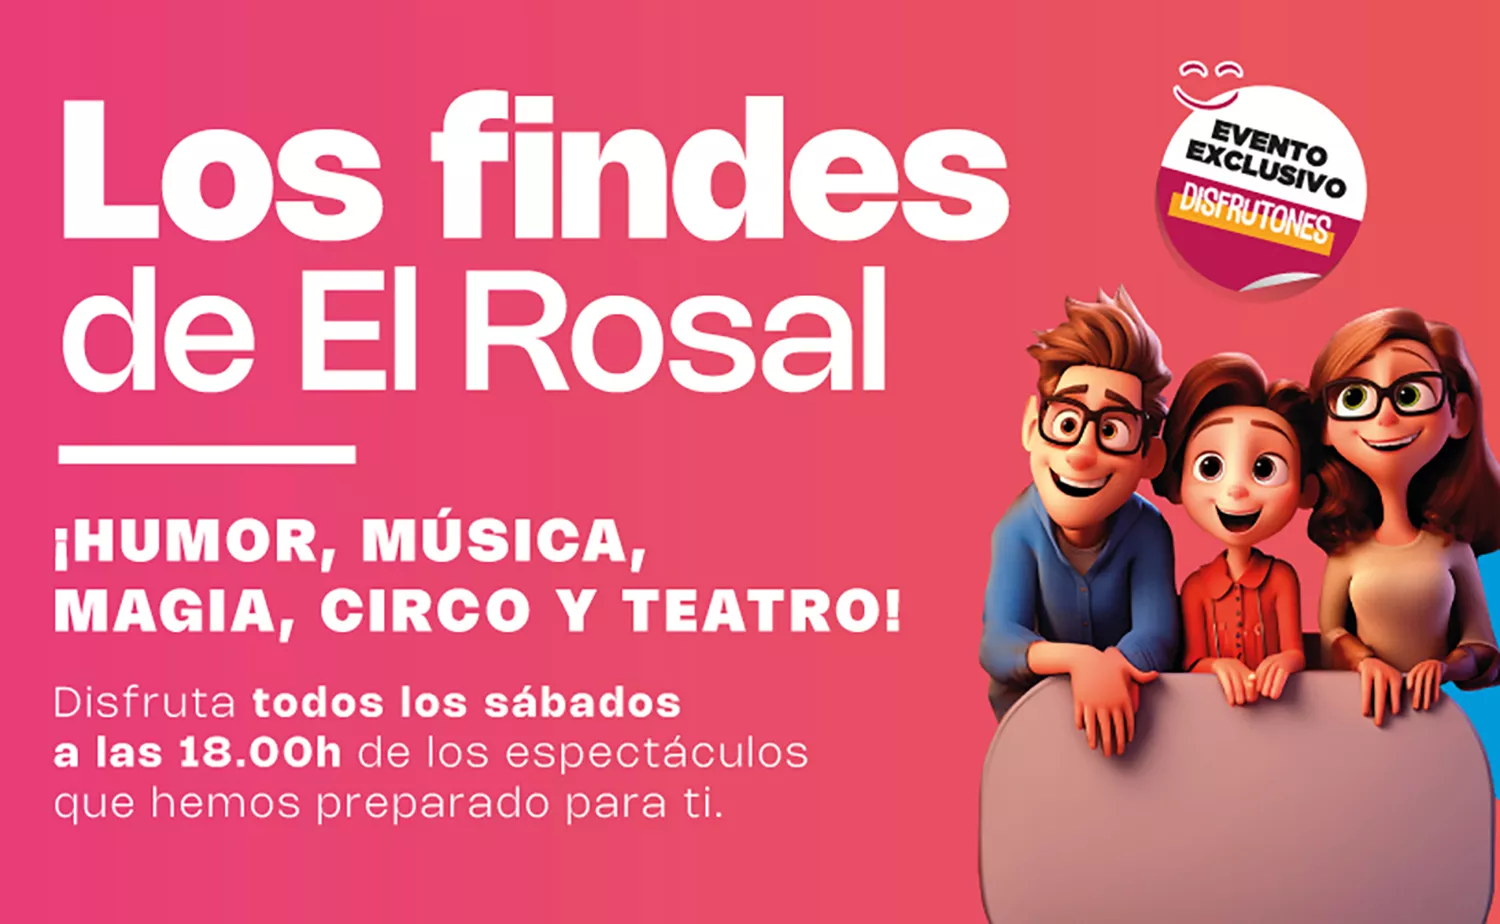 Los Findes de El Rosal regresan con música, humor y el sorteo de una Xbox Serie S